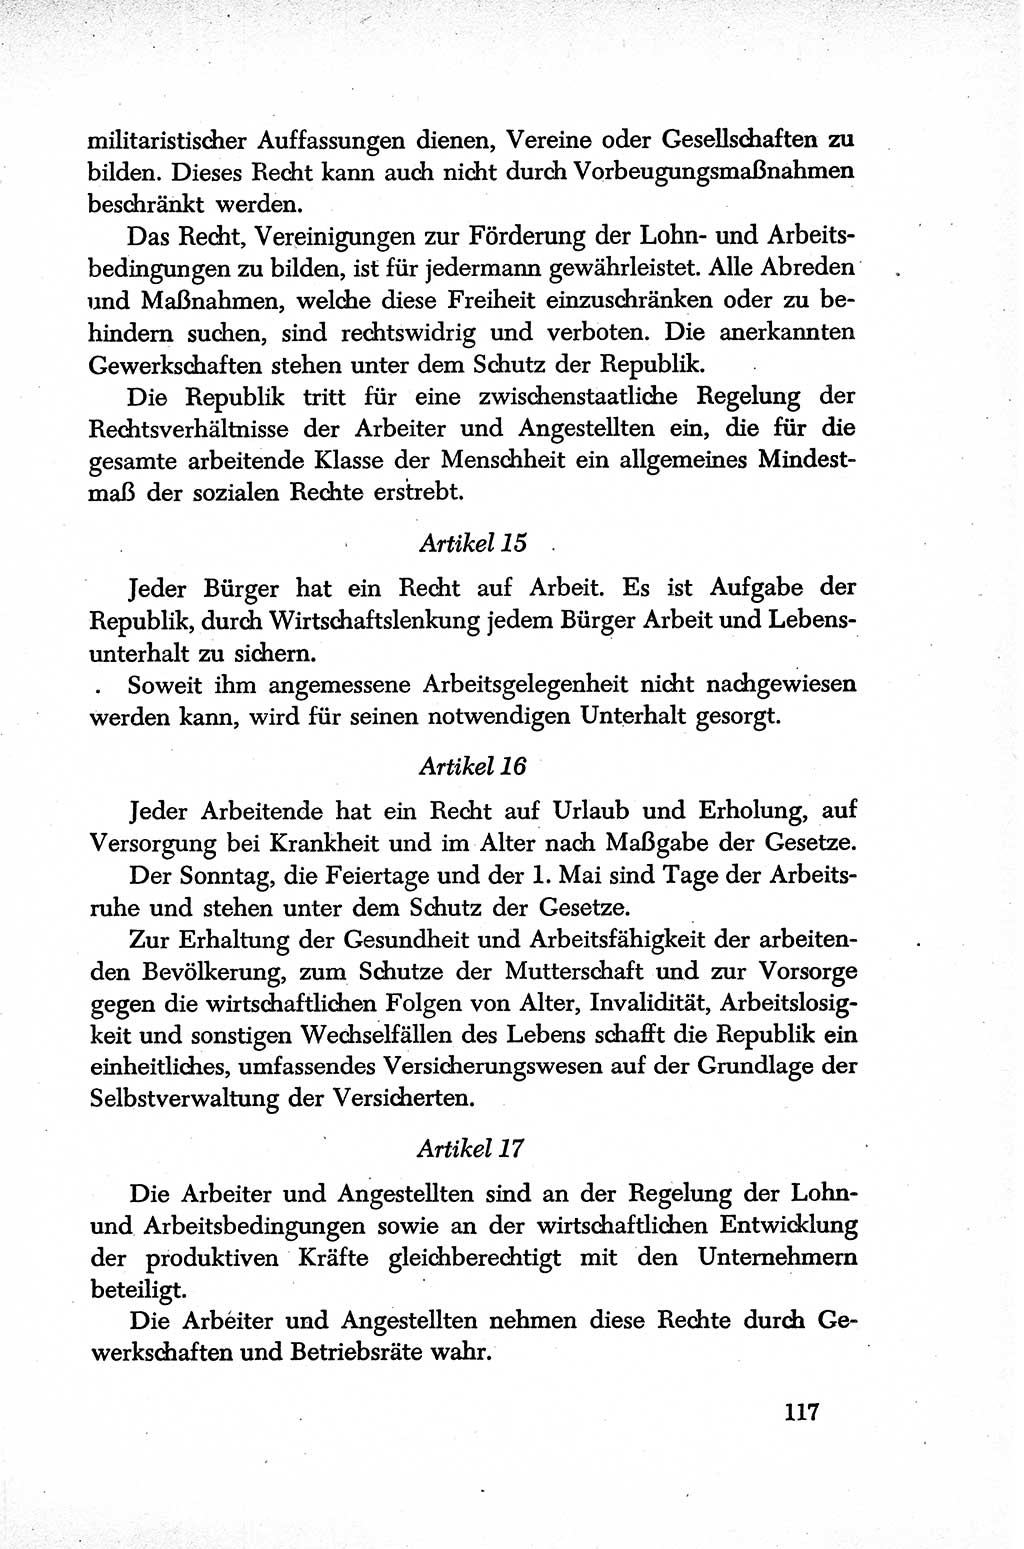 Dokumente der Sozialistischen Einheitspartei Deutschlands (SED) [Sowjetische Besatzungszone (SBZ) Deutschlands] 1946-1948, Seite 117 (Dok. SED SBZ Dtl. 1946-1948, S. 117)